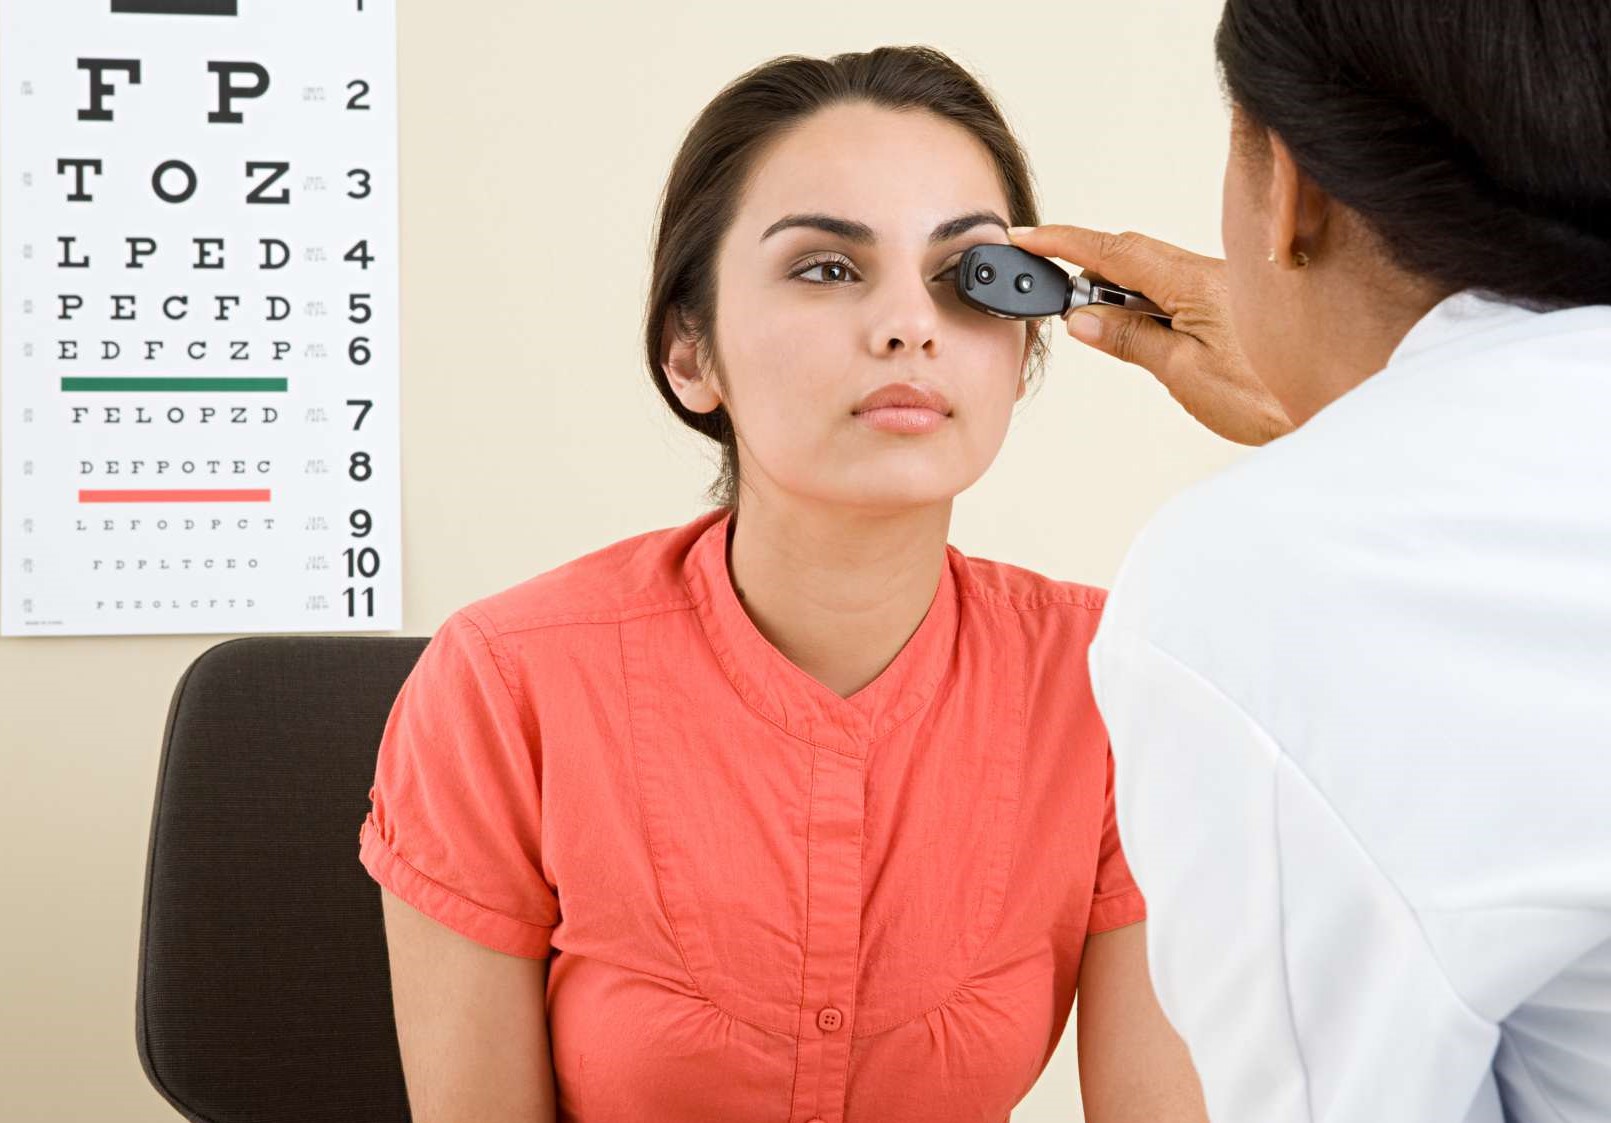 معاینه ی چشم - تاثیر کمبود خواب بر بینایی